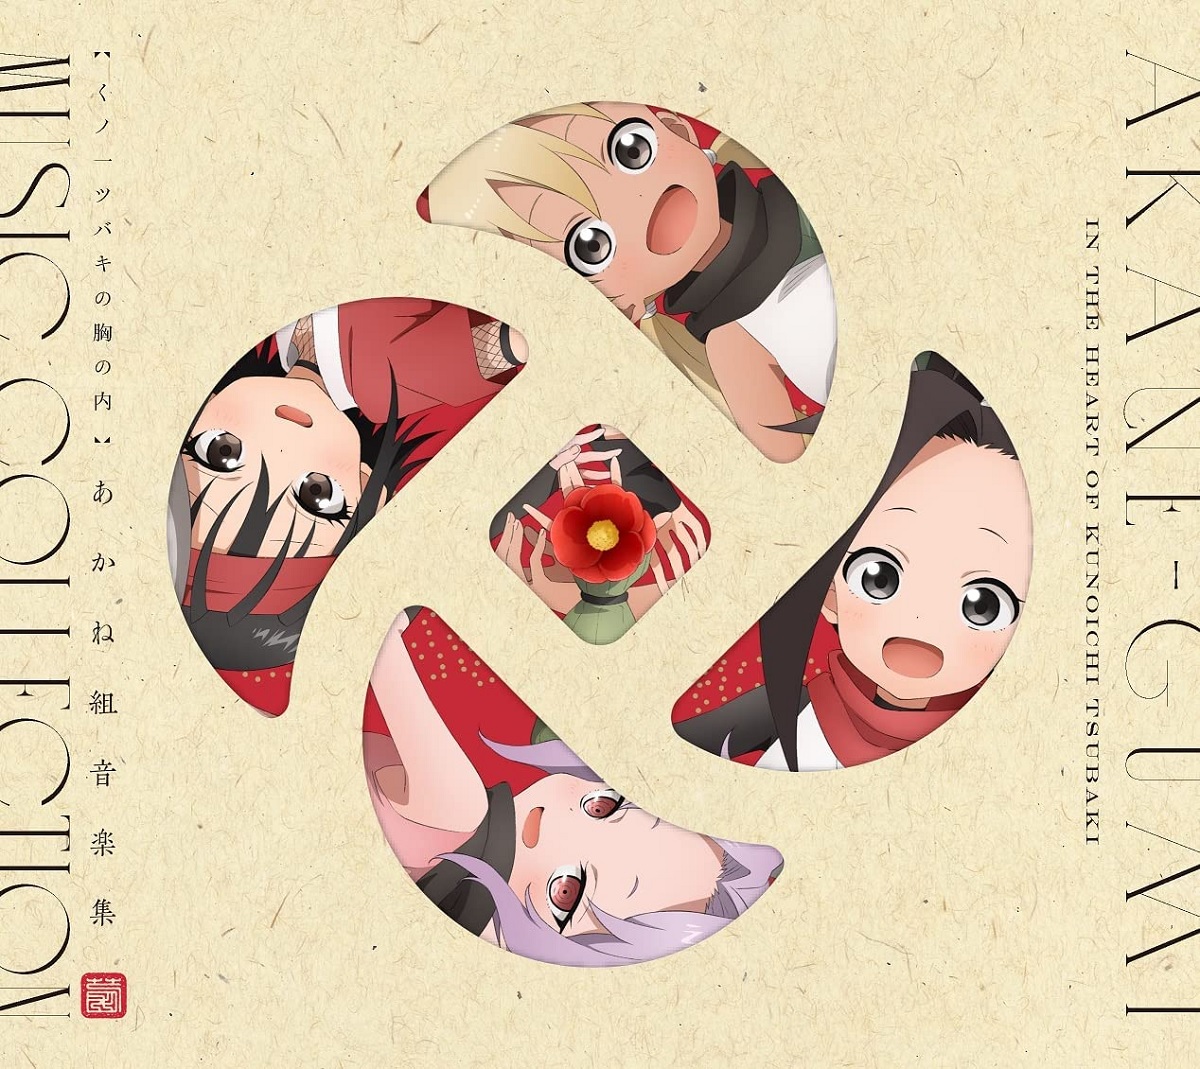 Cover art for『Hana (Yumi Uchiyama)・Konoha (M・A・O) - Akanegumi Katsudou Nisshi ~Sensei~』from the release『Kunoichi Tsubaki no Mune no Uchi Akanegumi Ongakushuu』